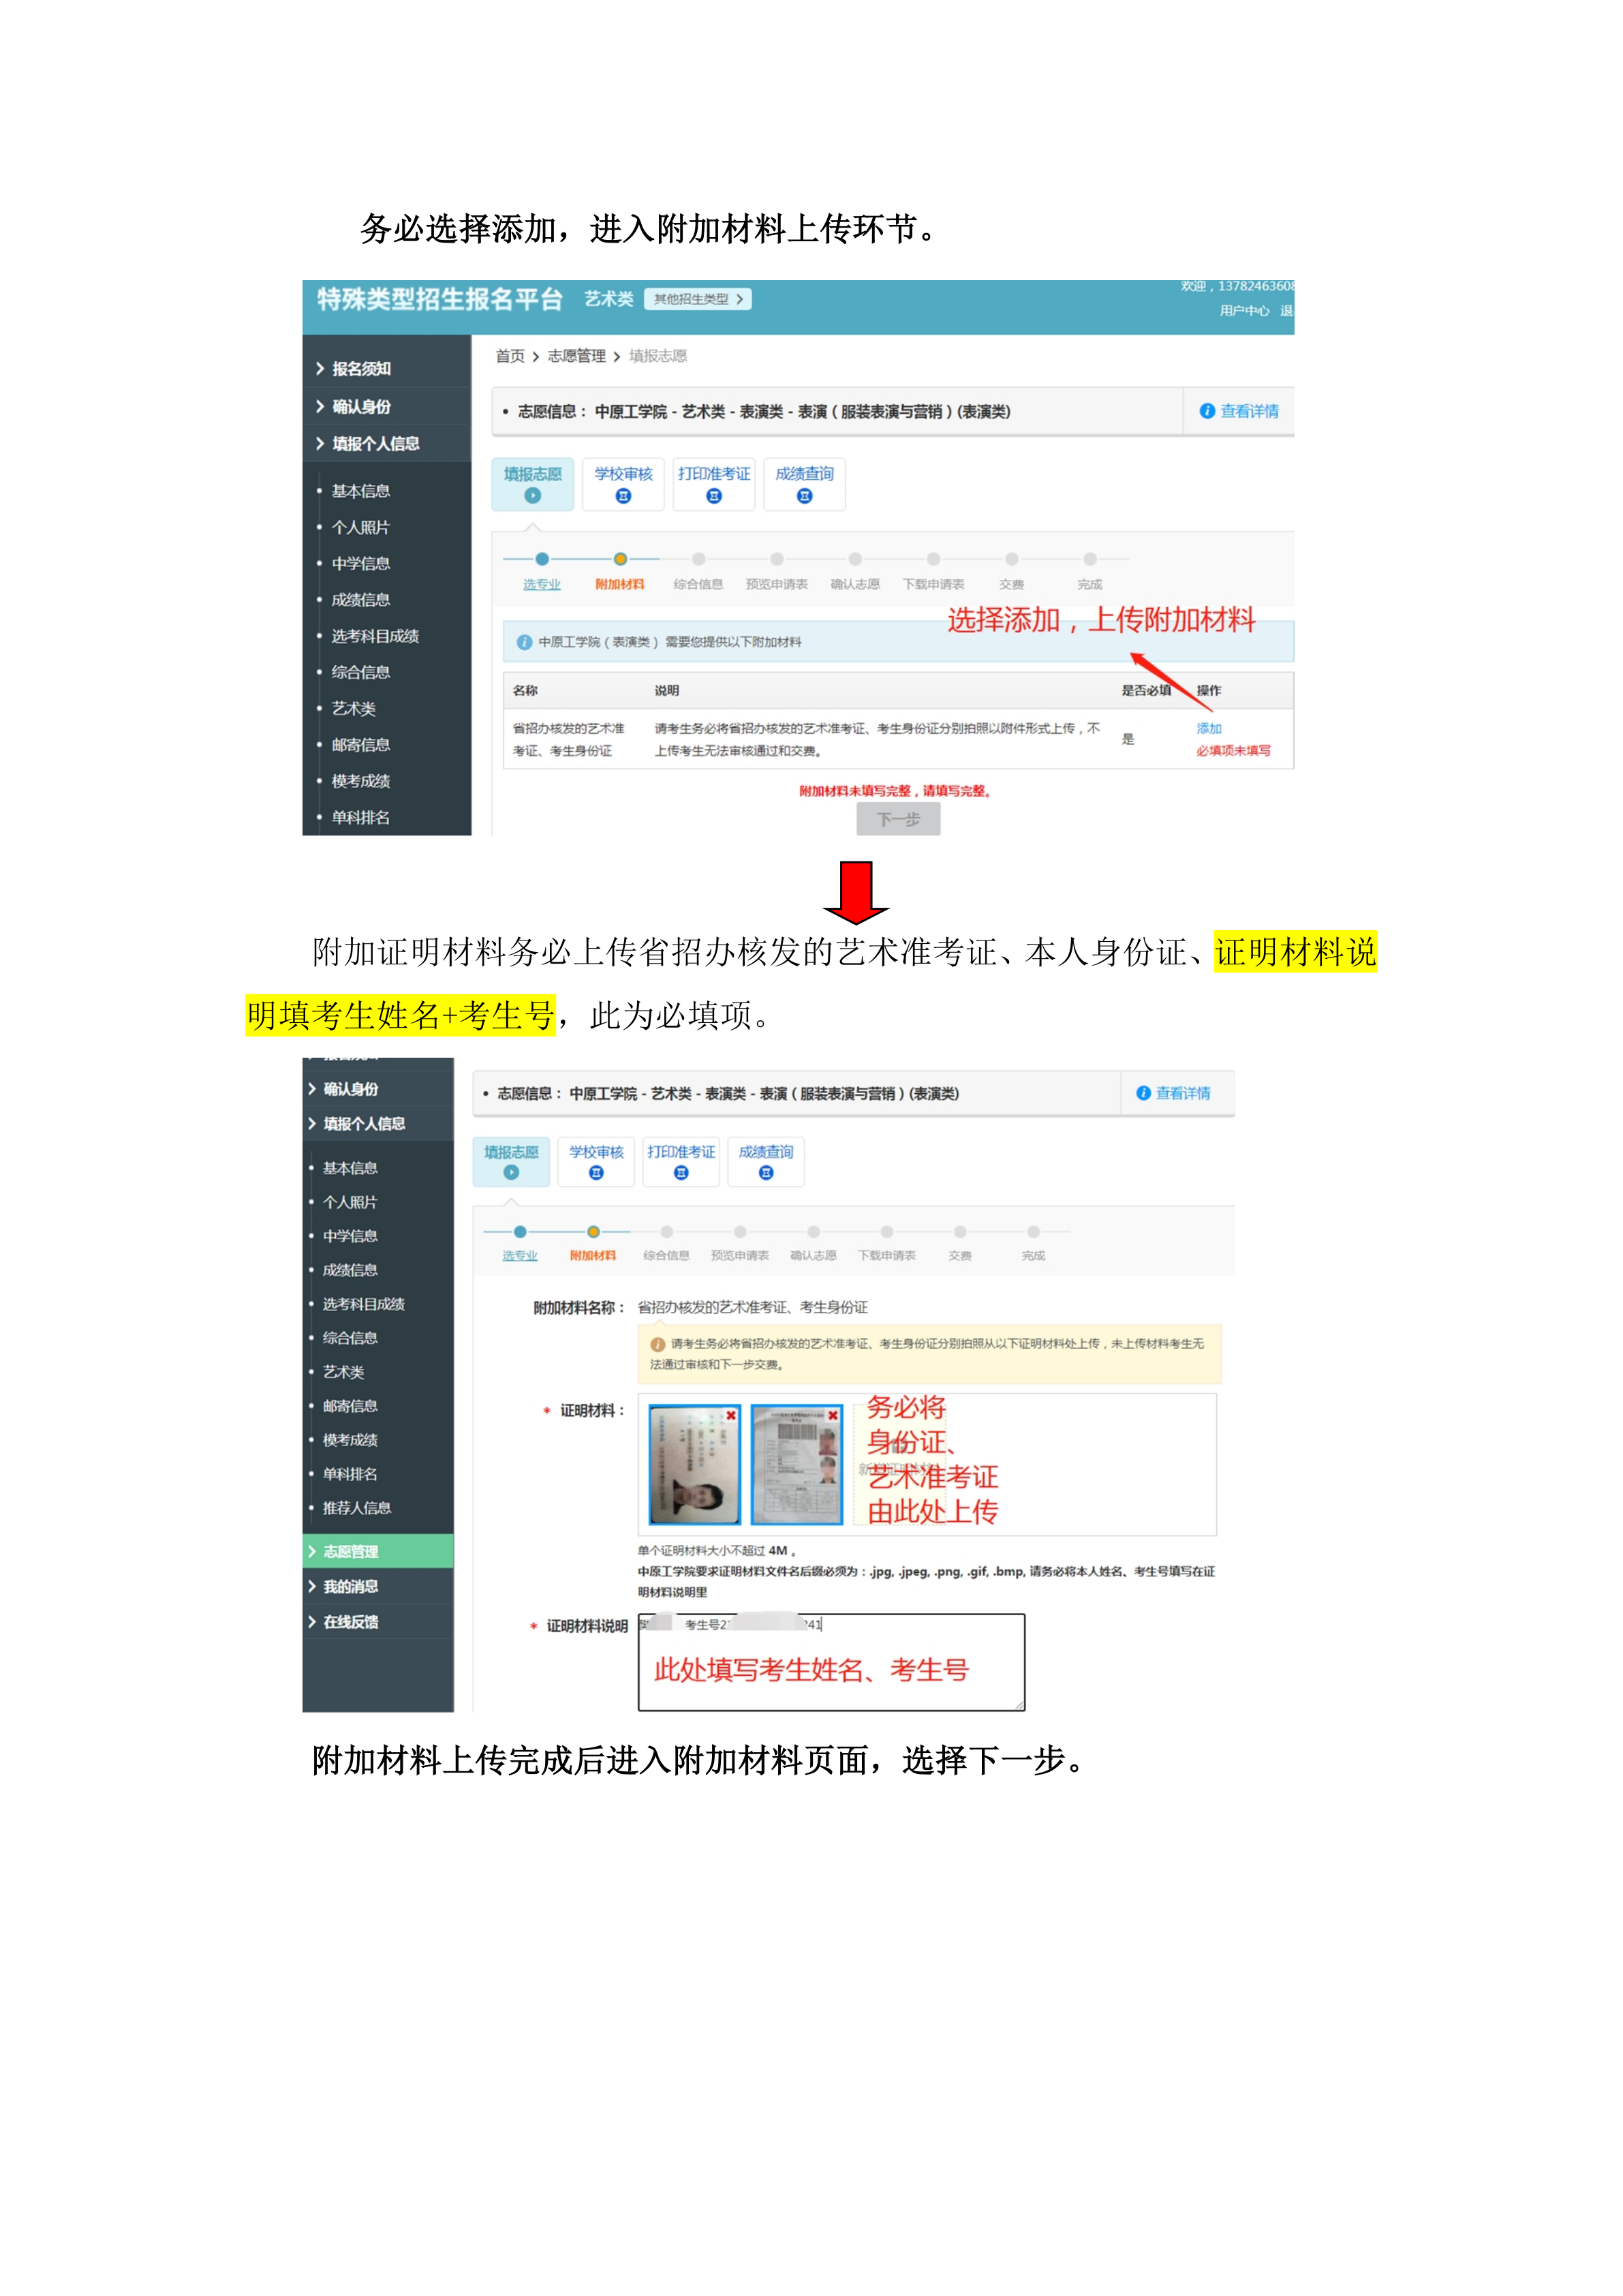 中原工学院表演专业网上报名流程(1)_8.png